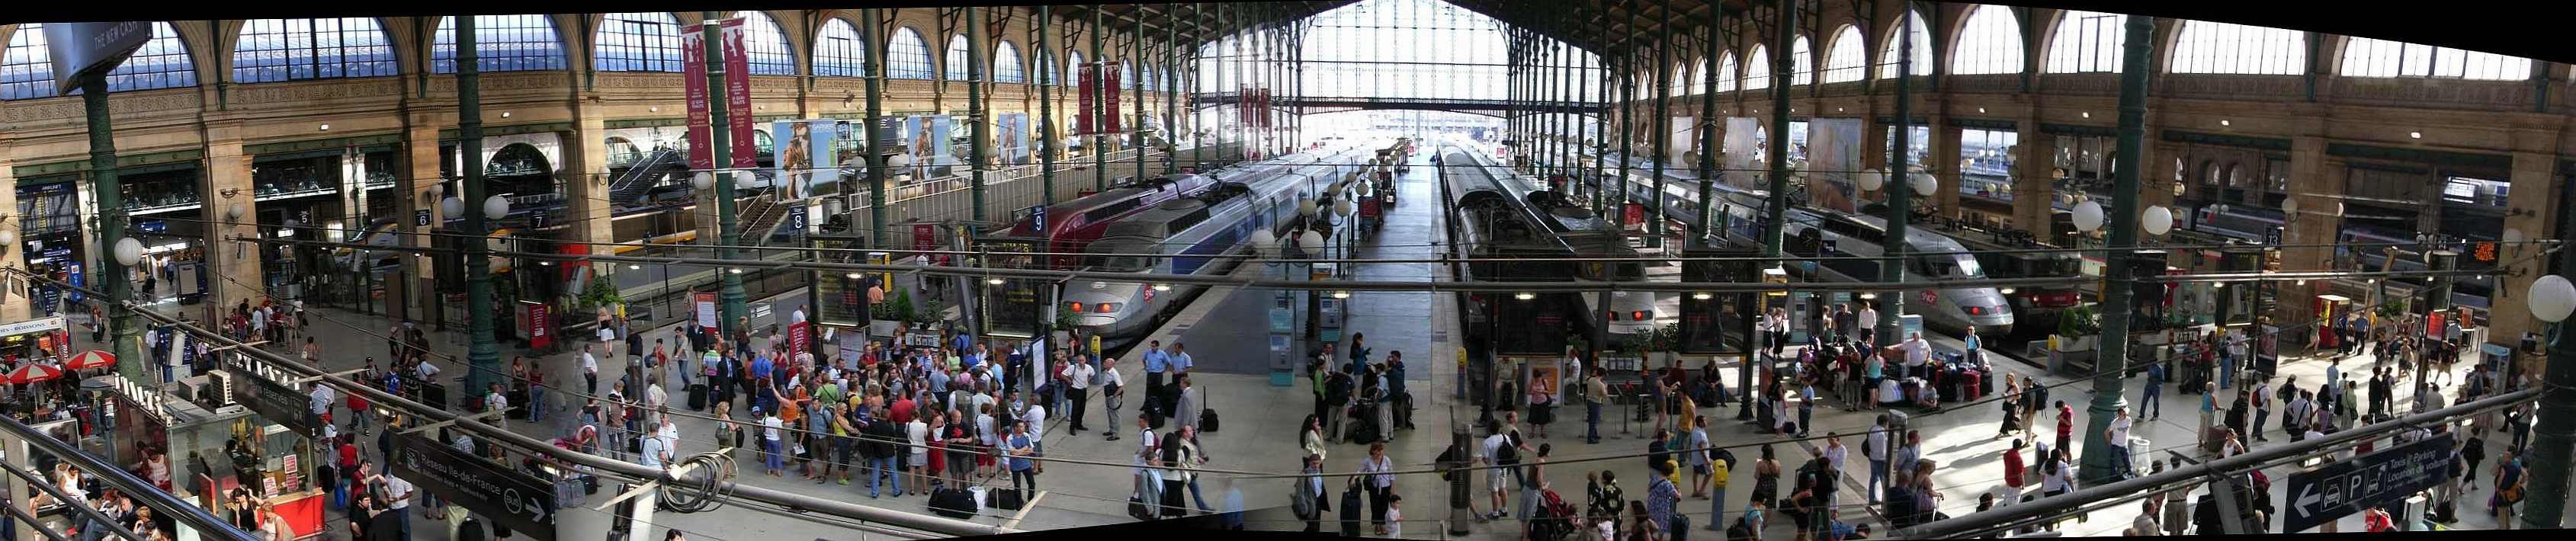 Paříž, nádraží Gare du Nord